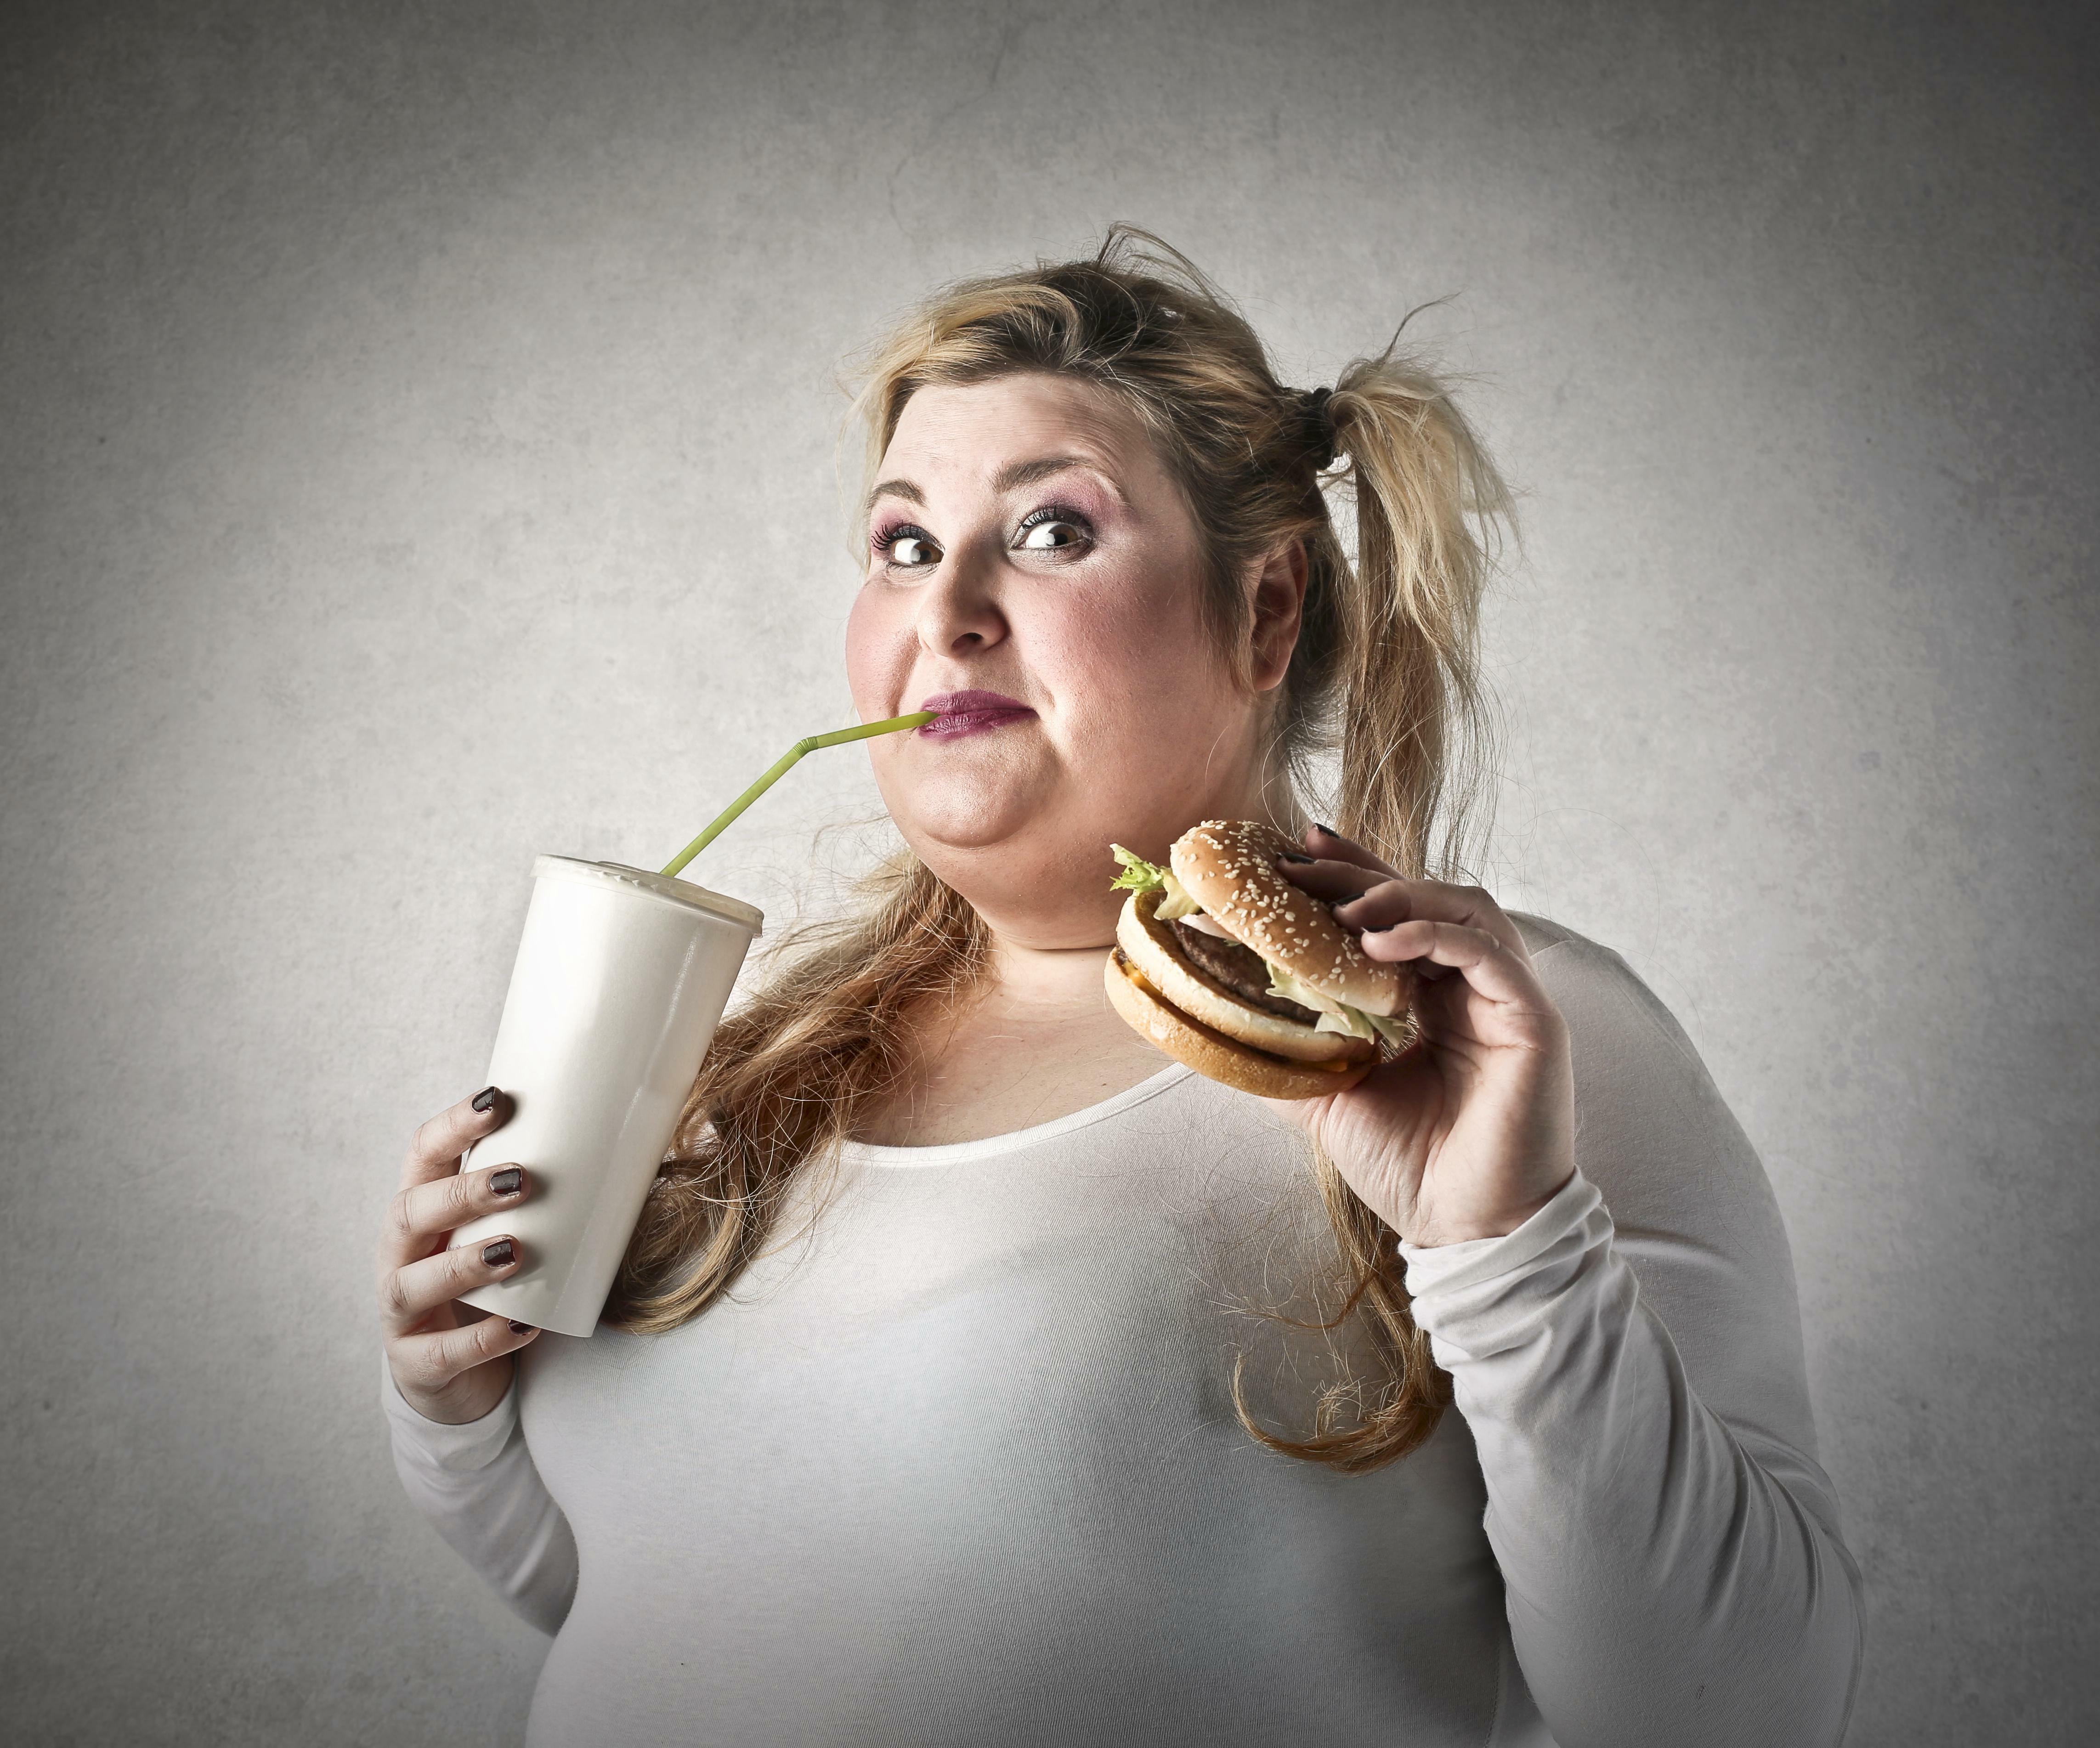 Языком толстух. Толстушка с едой. Толстая девушка ест. Полная женщина с едой.